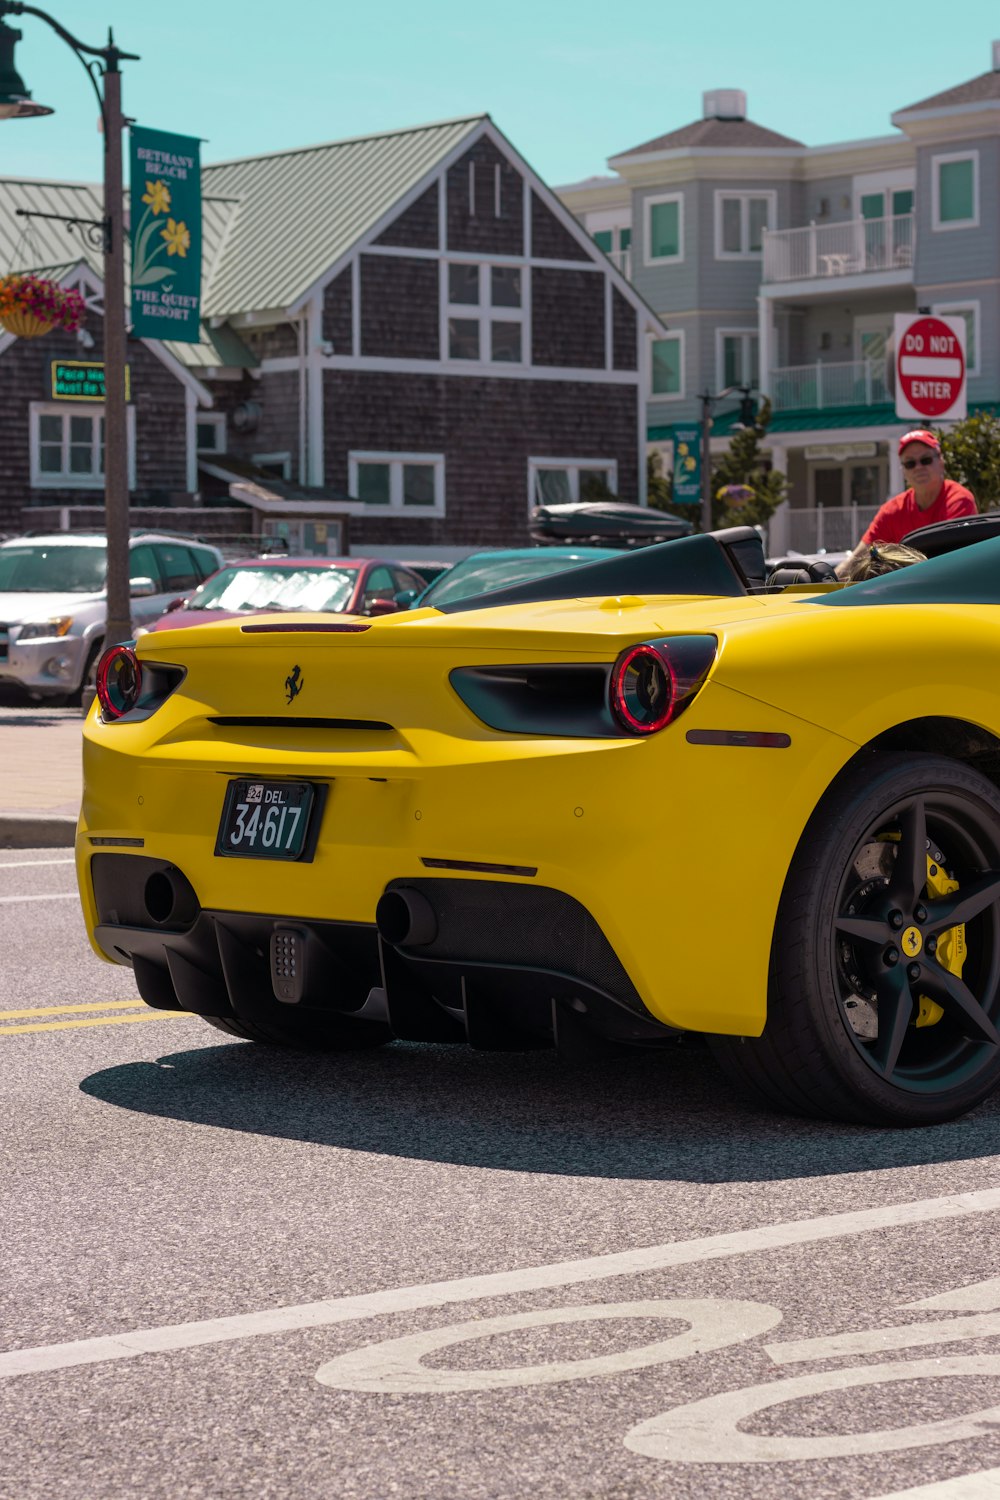 Coche deportivo Ferrari amarillo en carretera durante el día